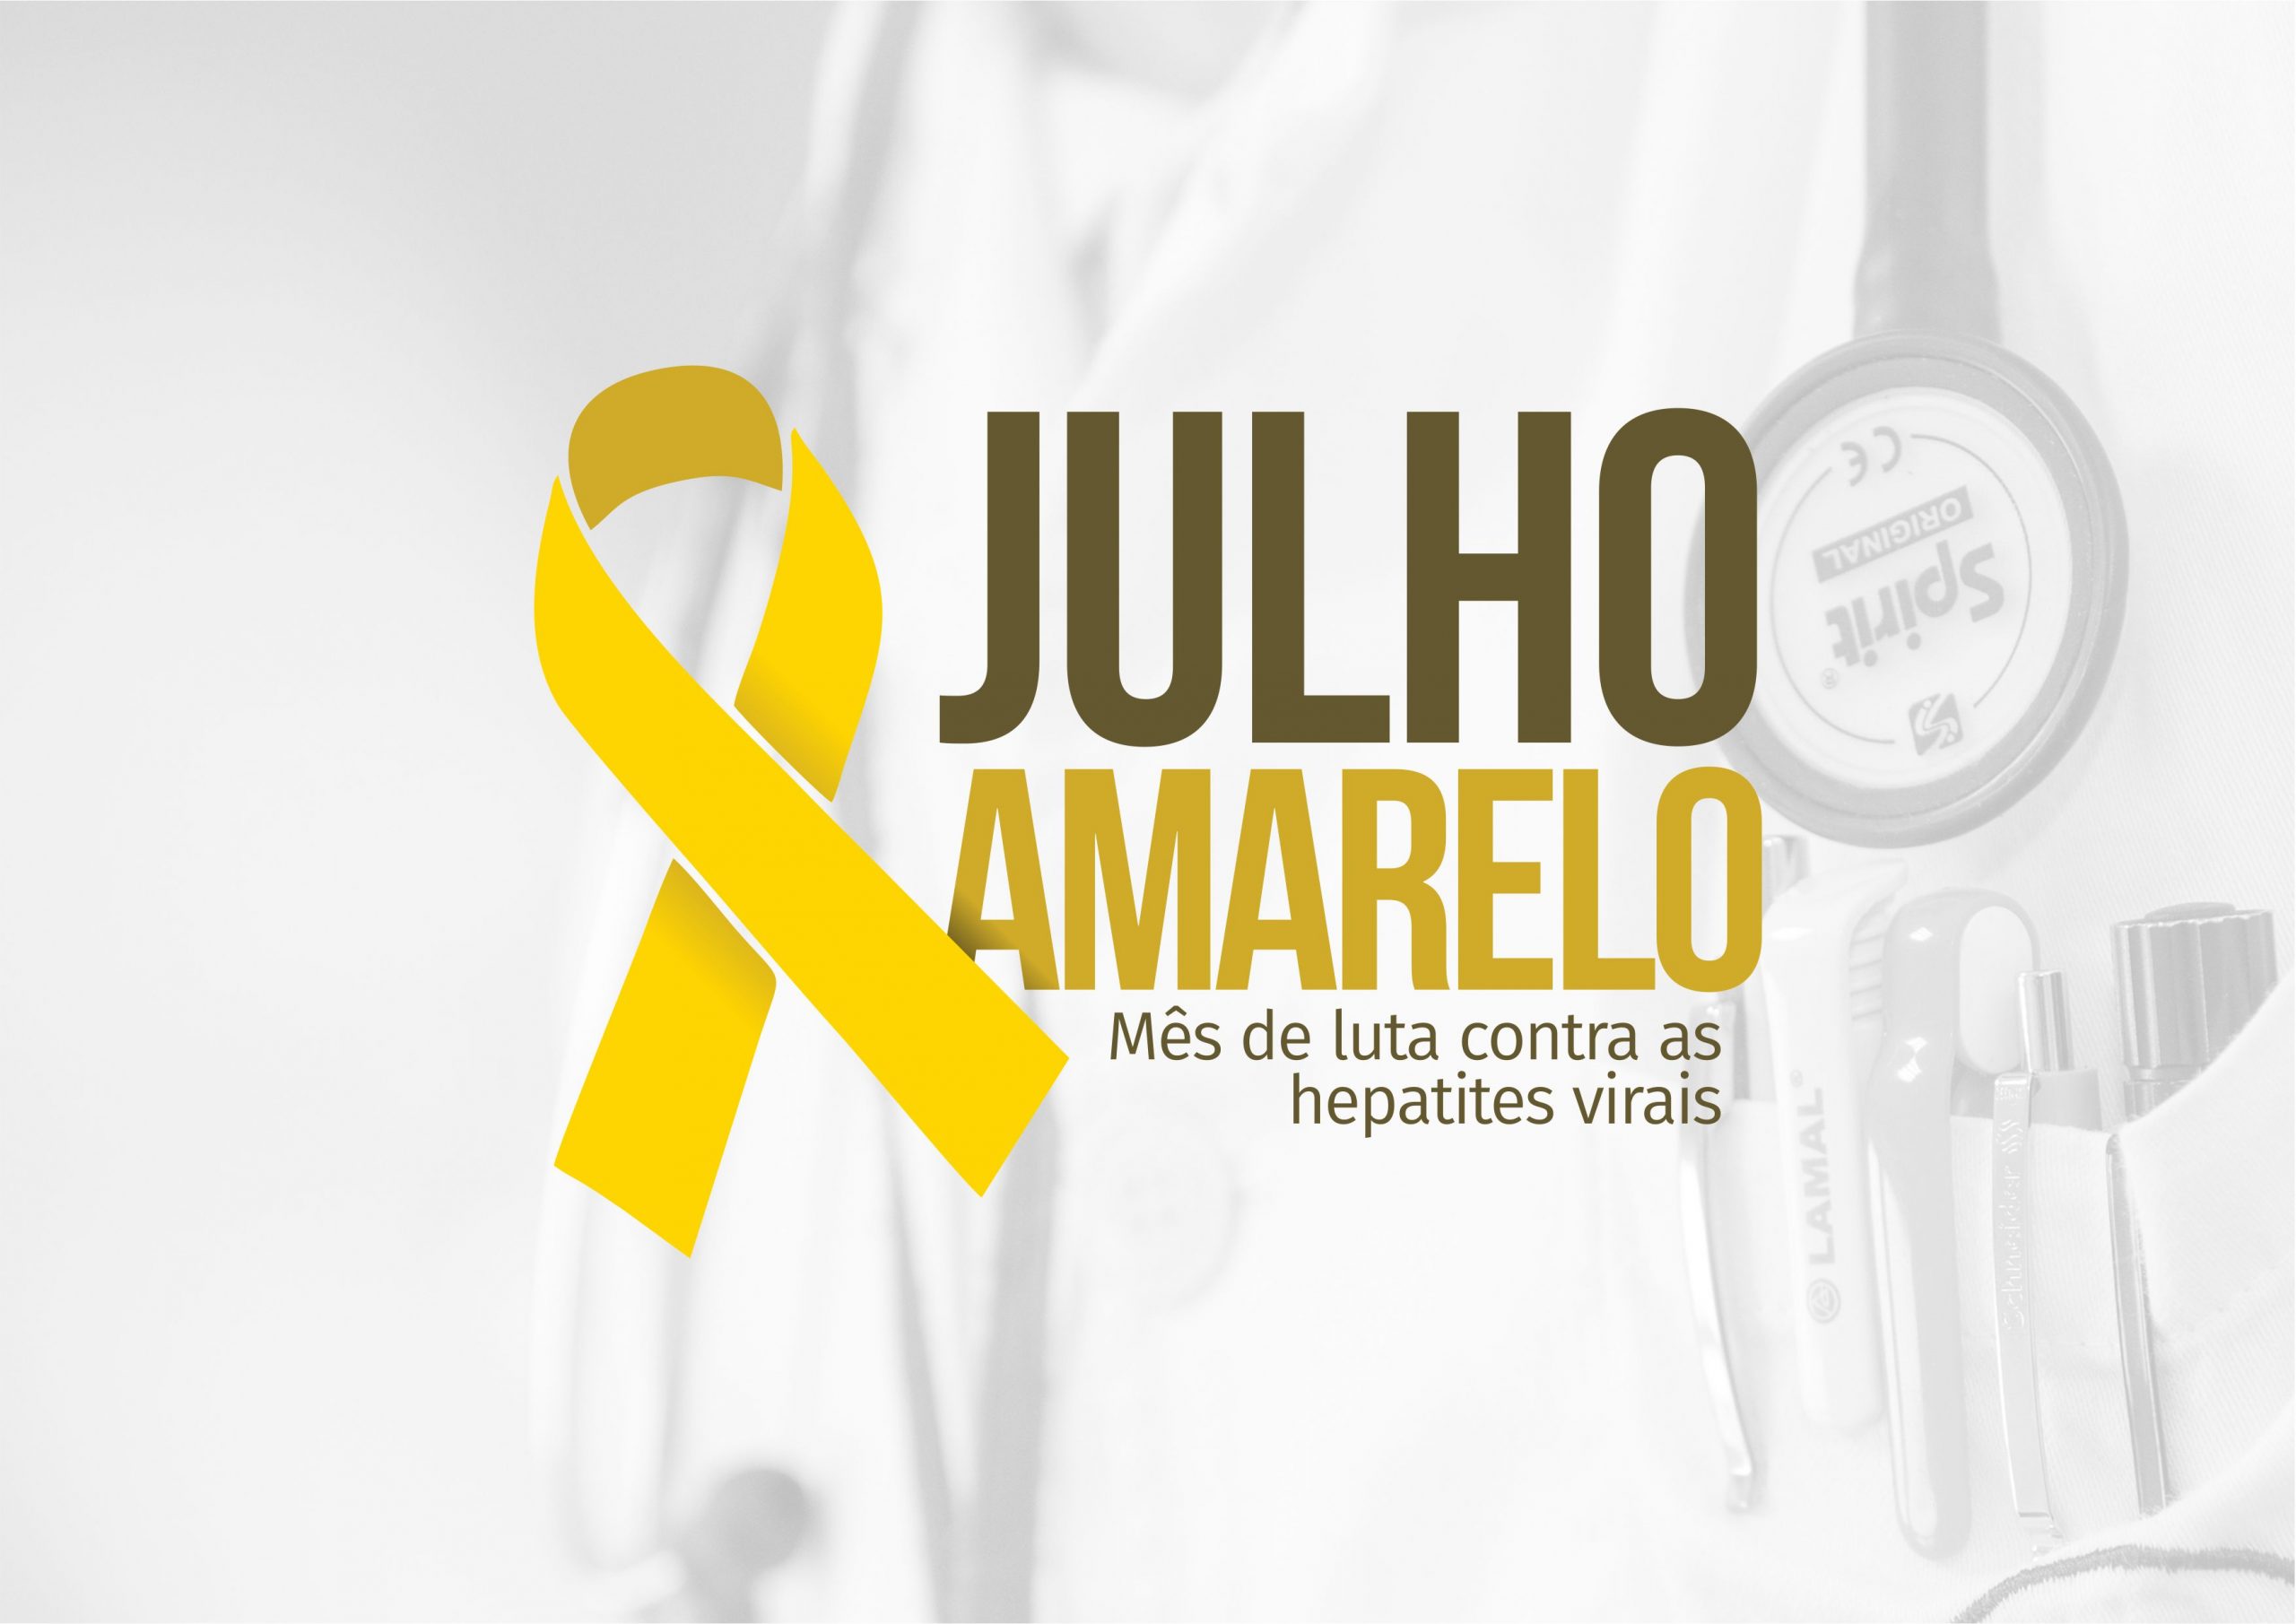 JULHO AMARELO | Campanha reforça ações de vigilância e prevenção contra hepatites